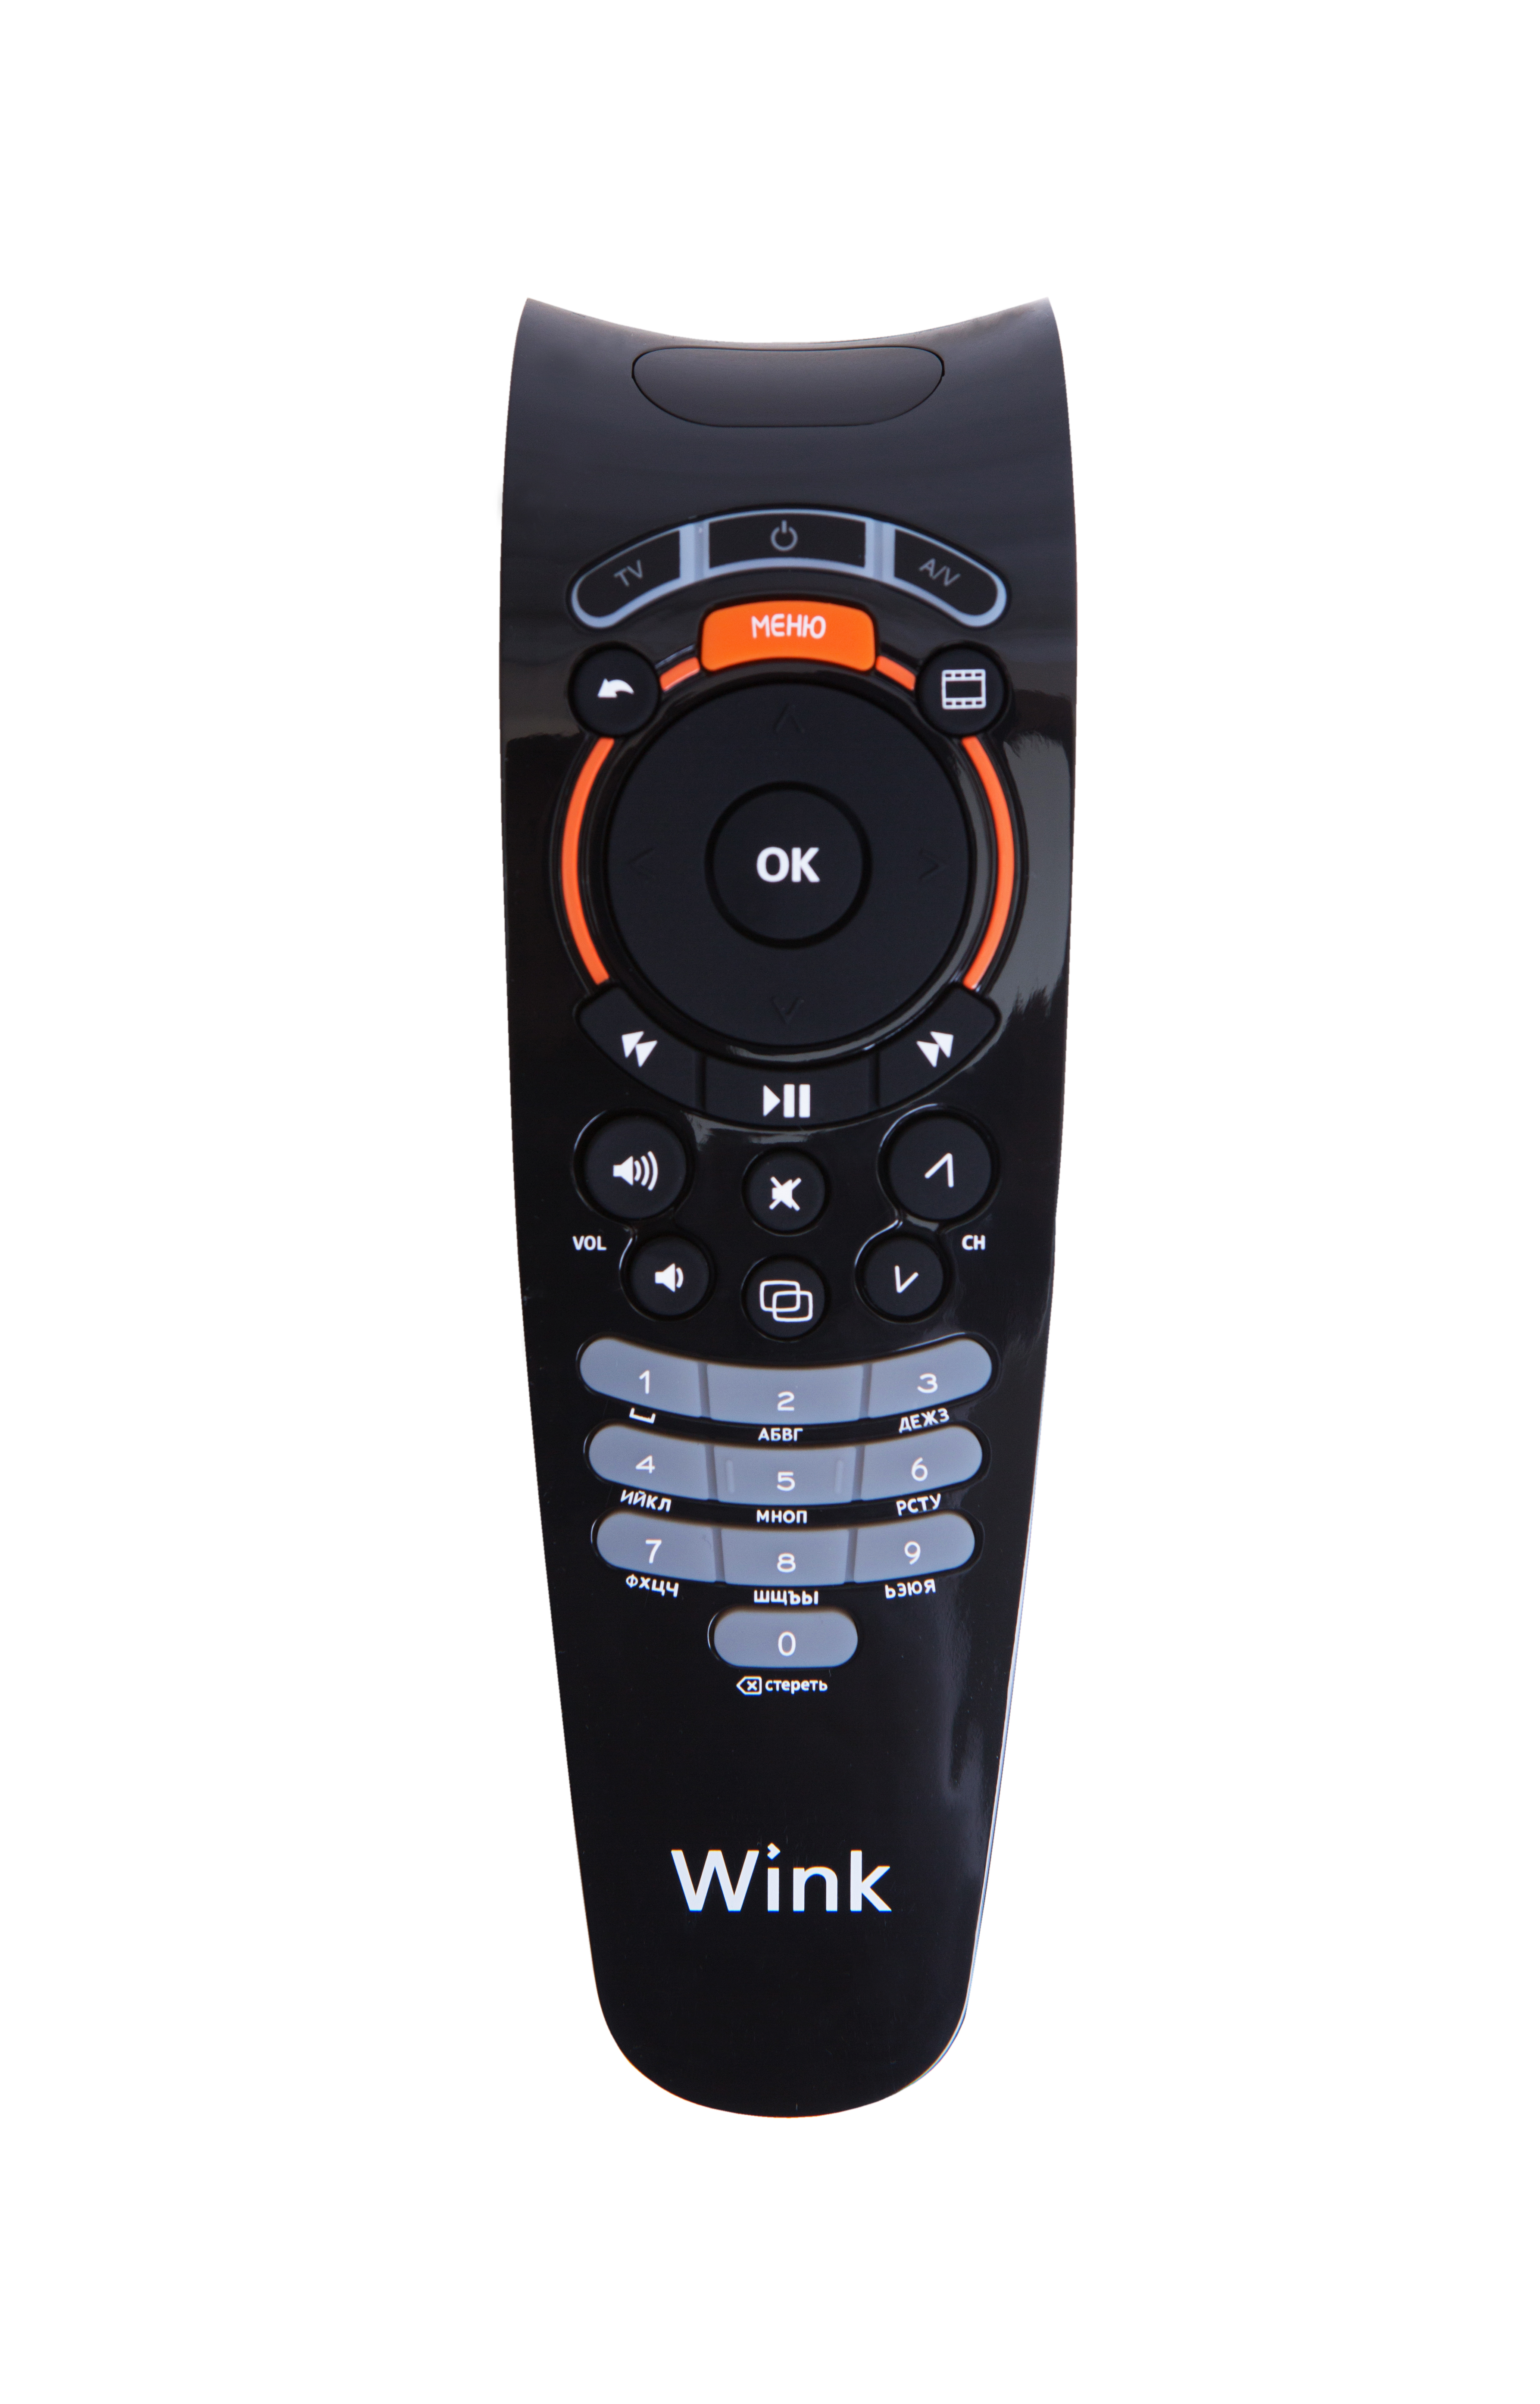 Все Ростелеком WINK (stb122a) цифровая TV приставка видеонаблюдения в магазине Vidos Group